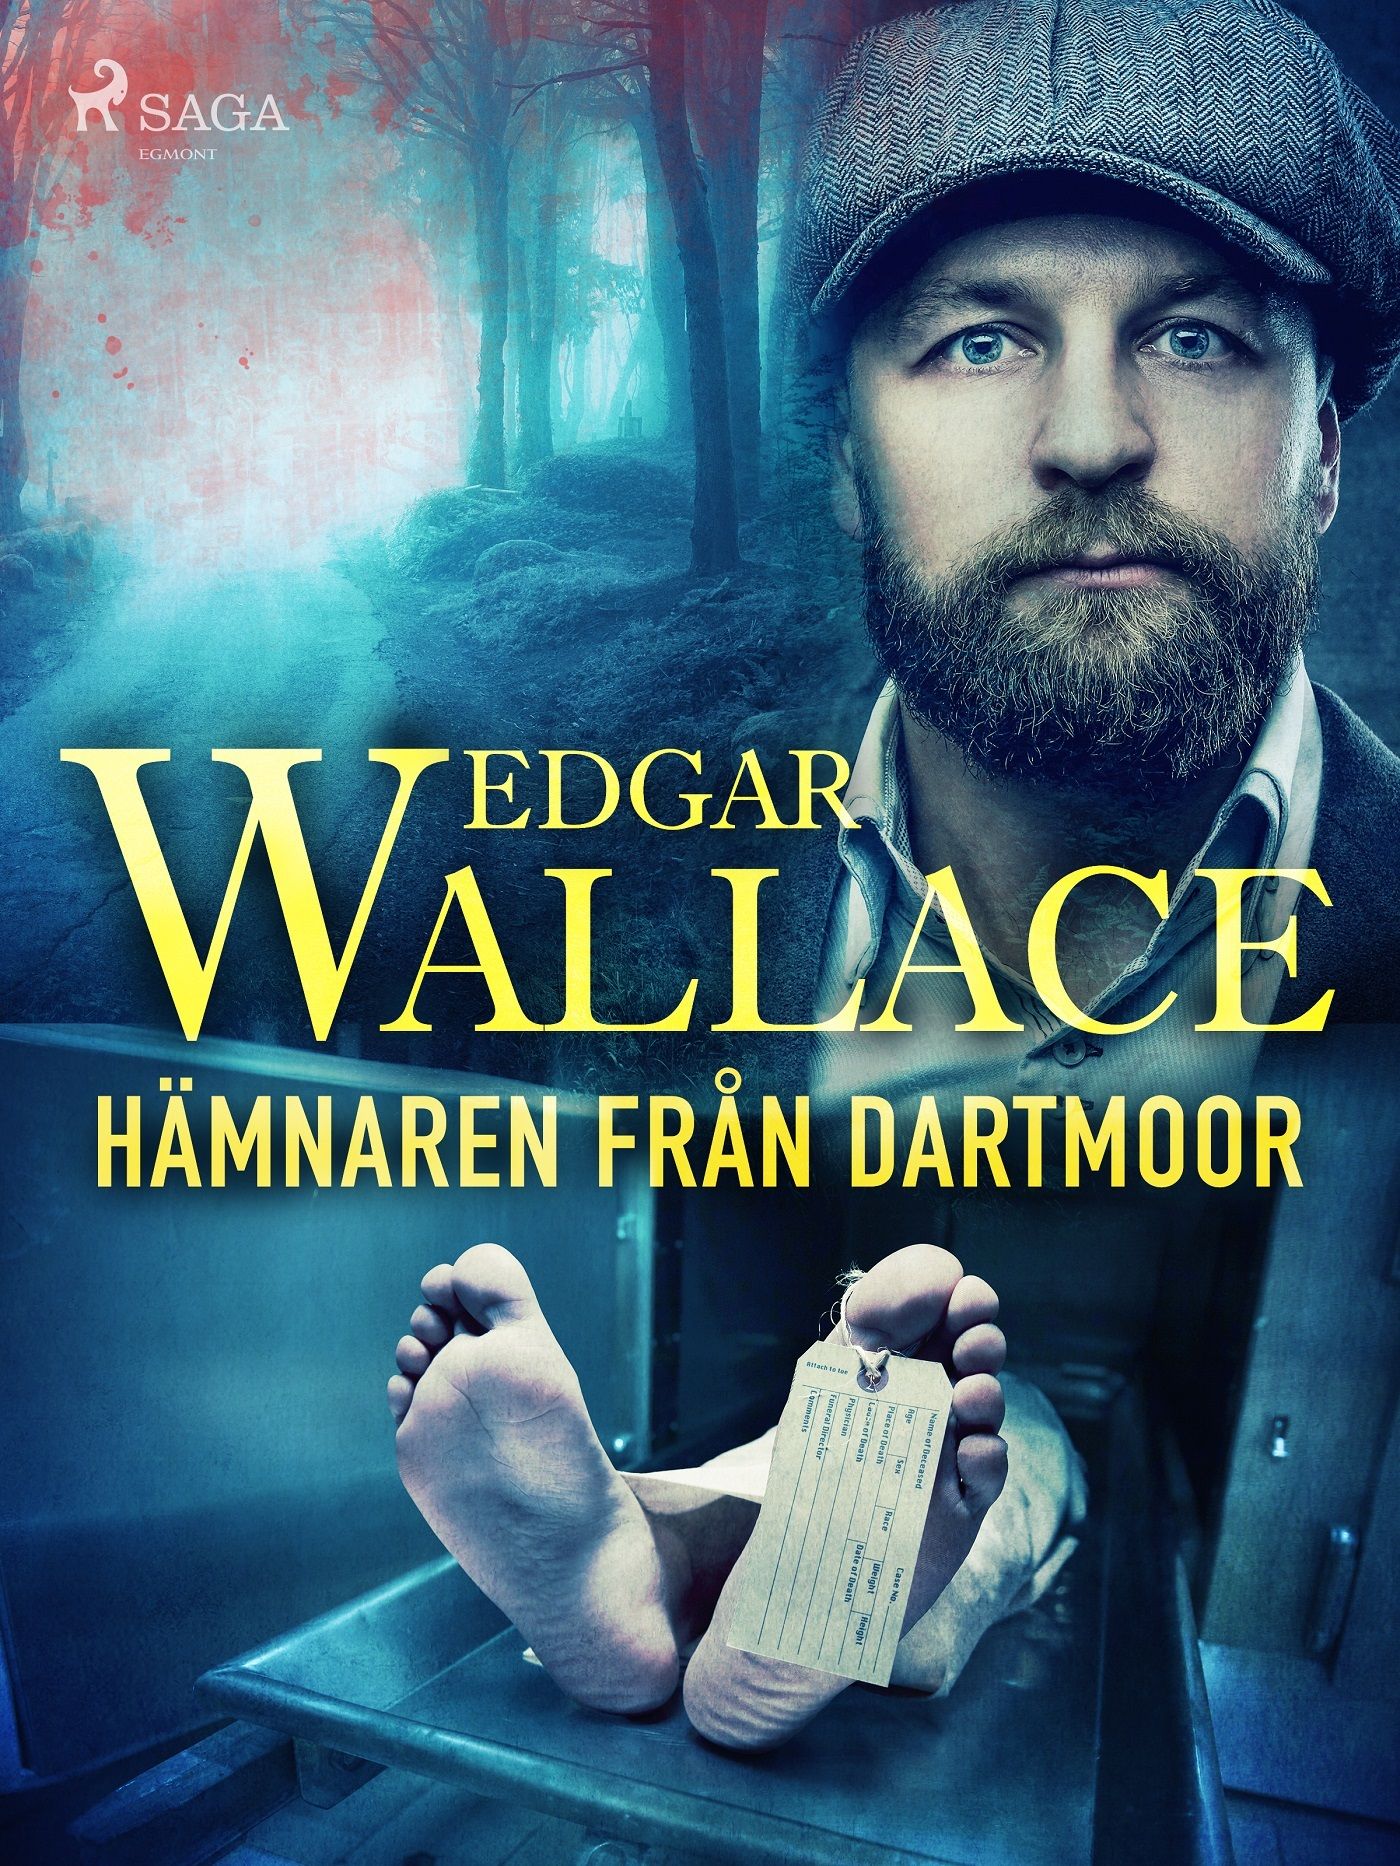 Hämnaren från Dartmoor, e-bok av Edgar Wallace